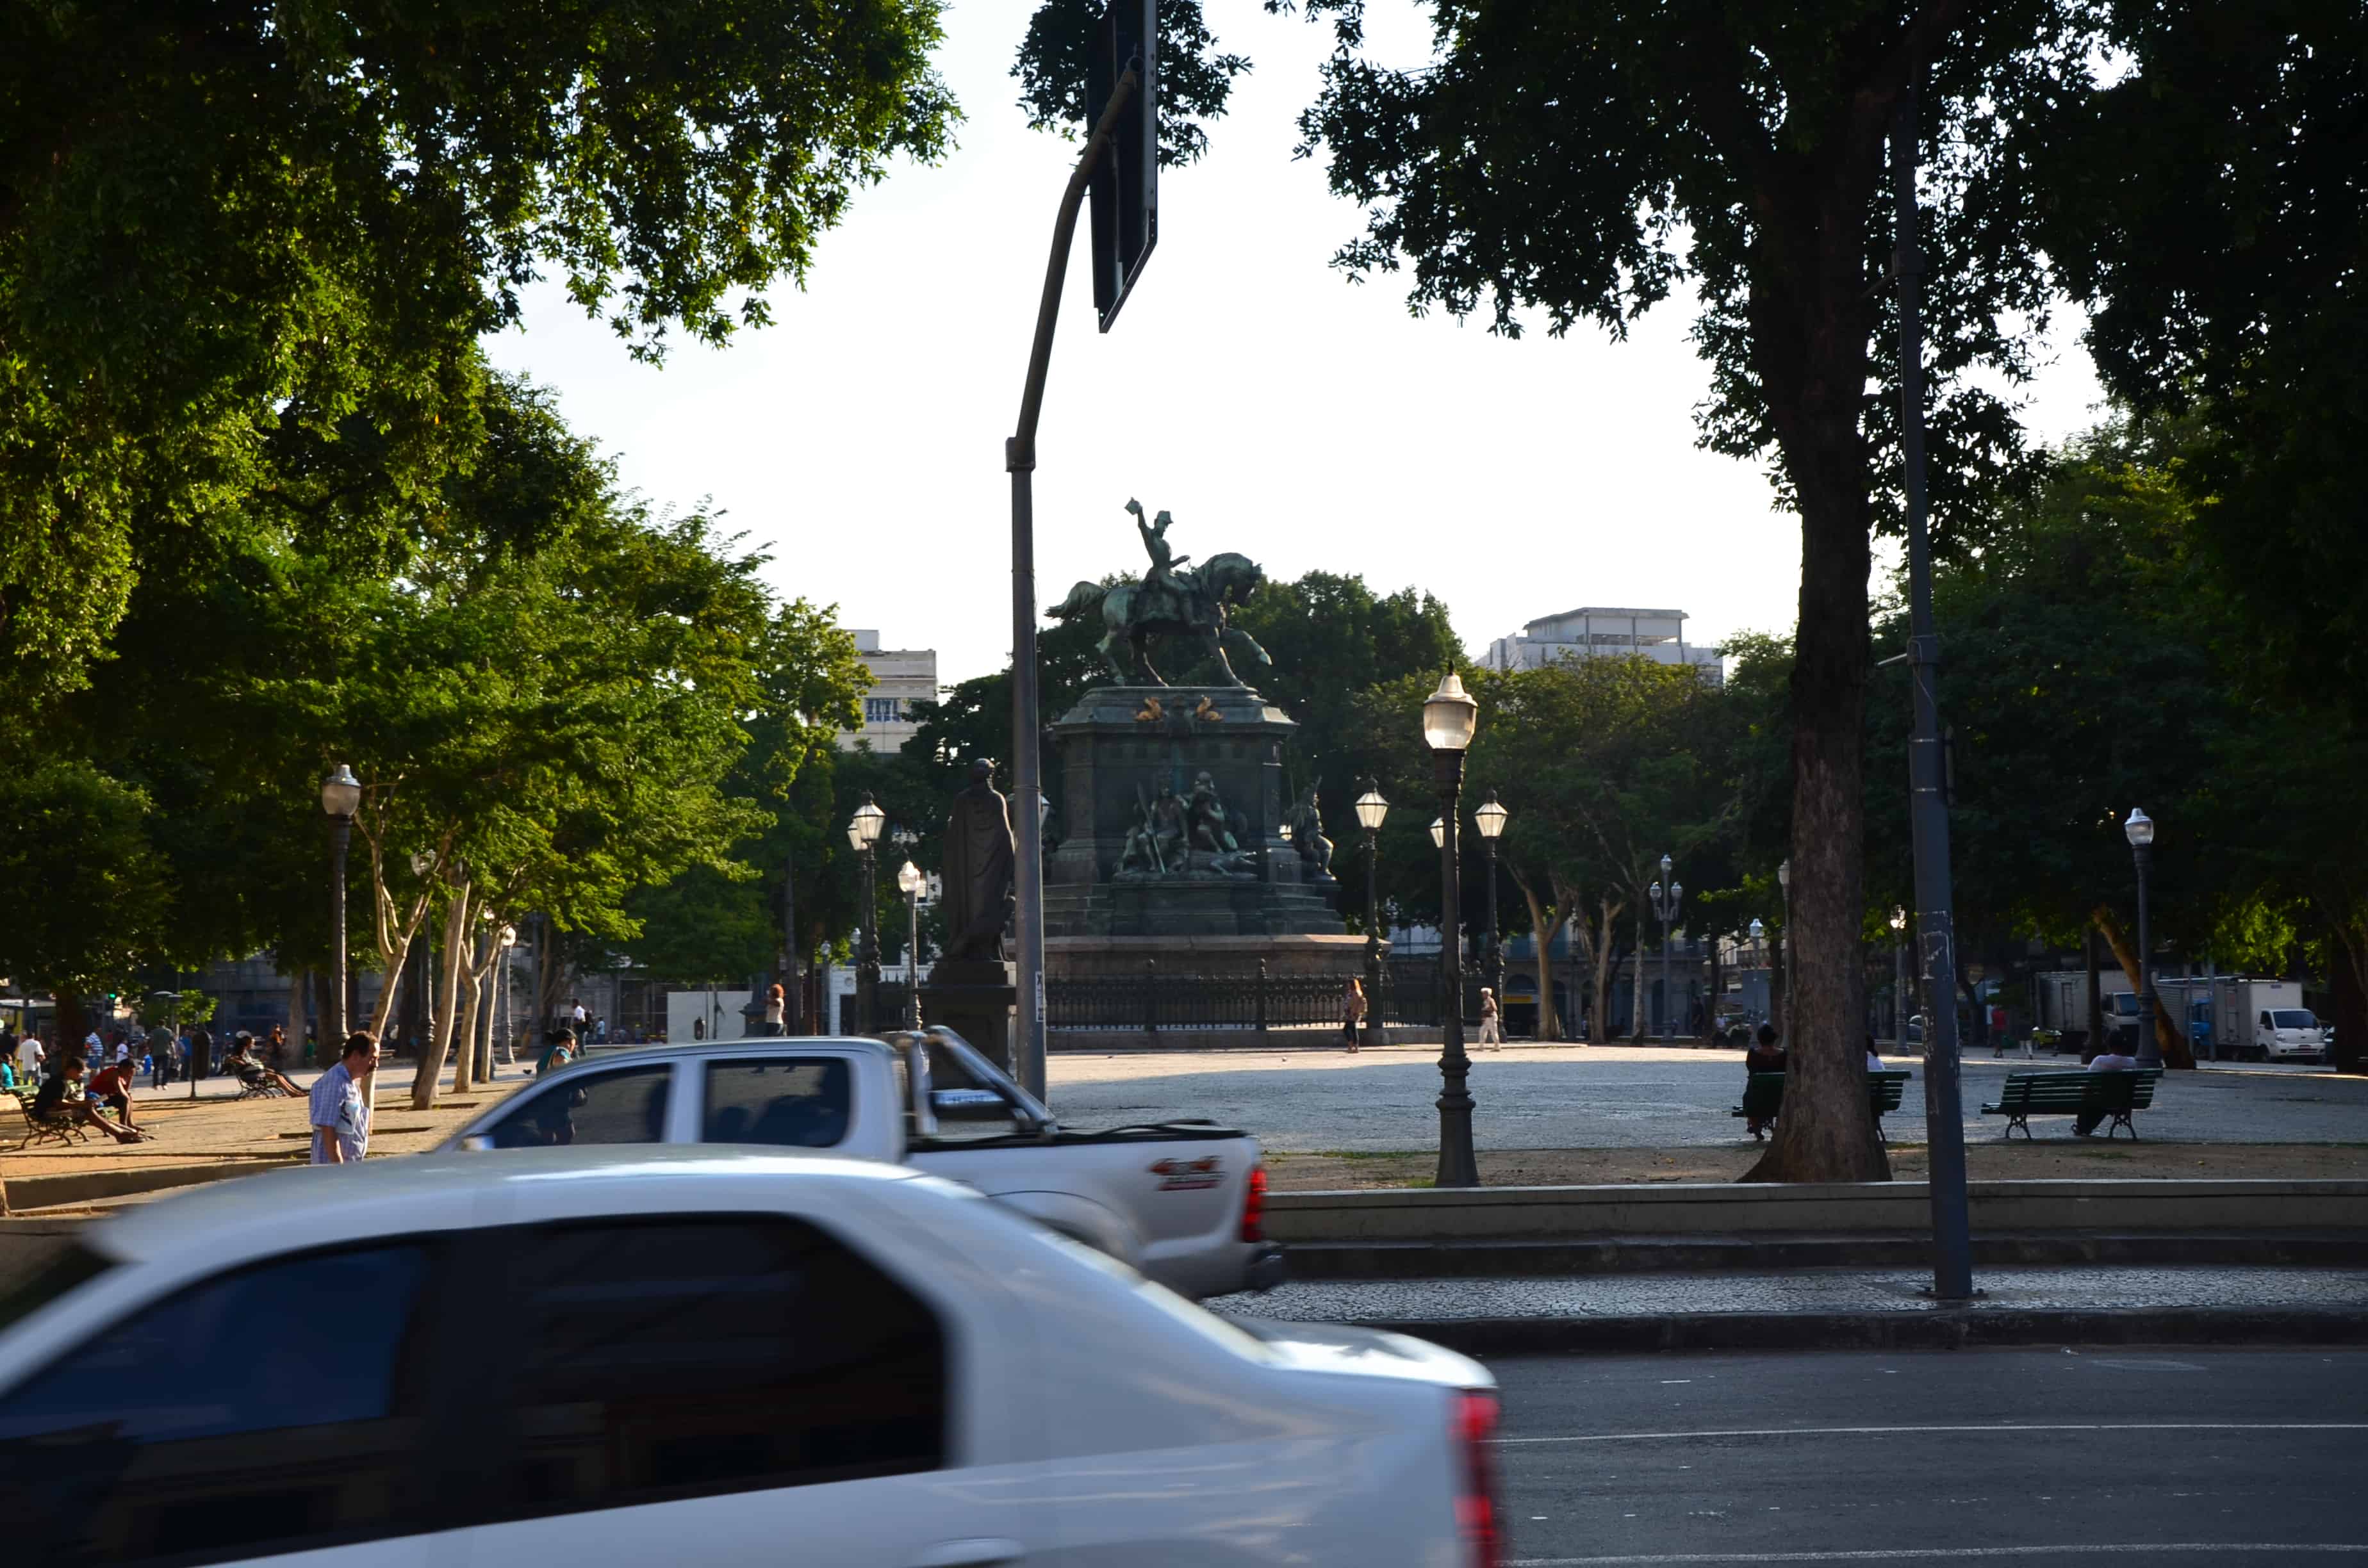 Praça Tiradentes in Rio de Janeiro, Brazil